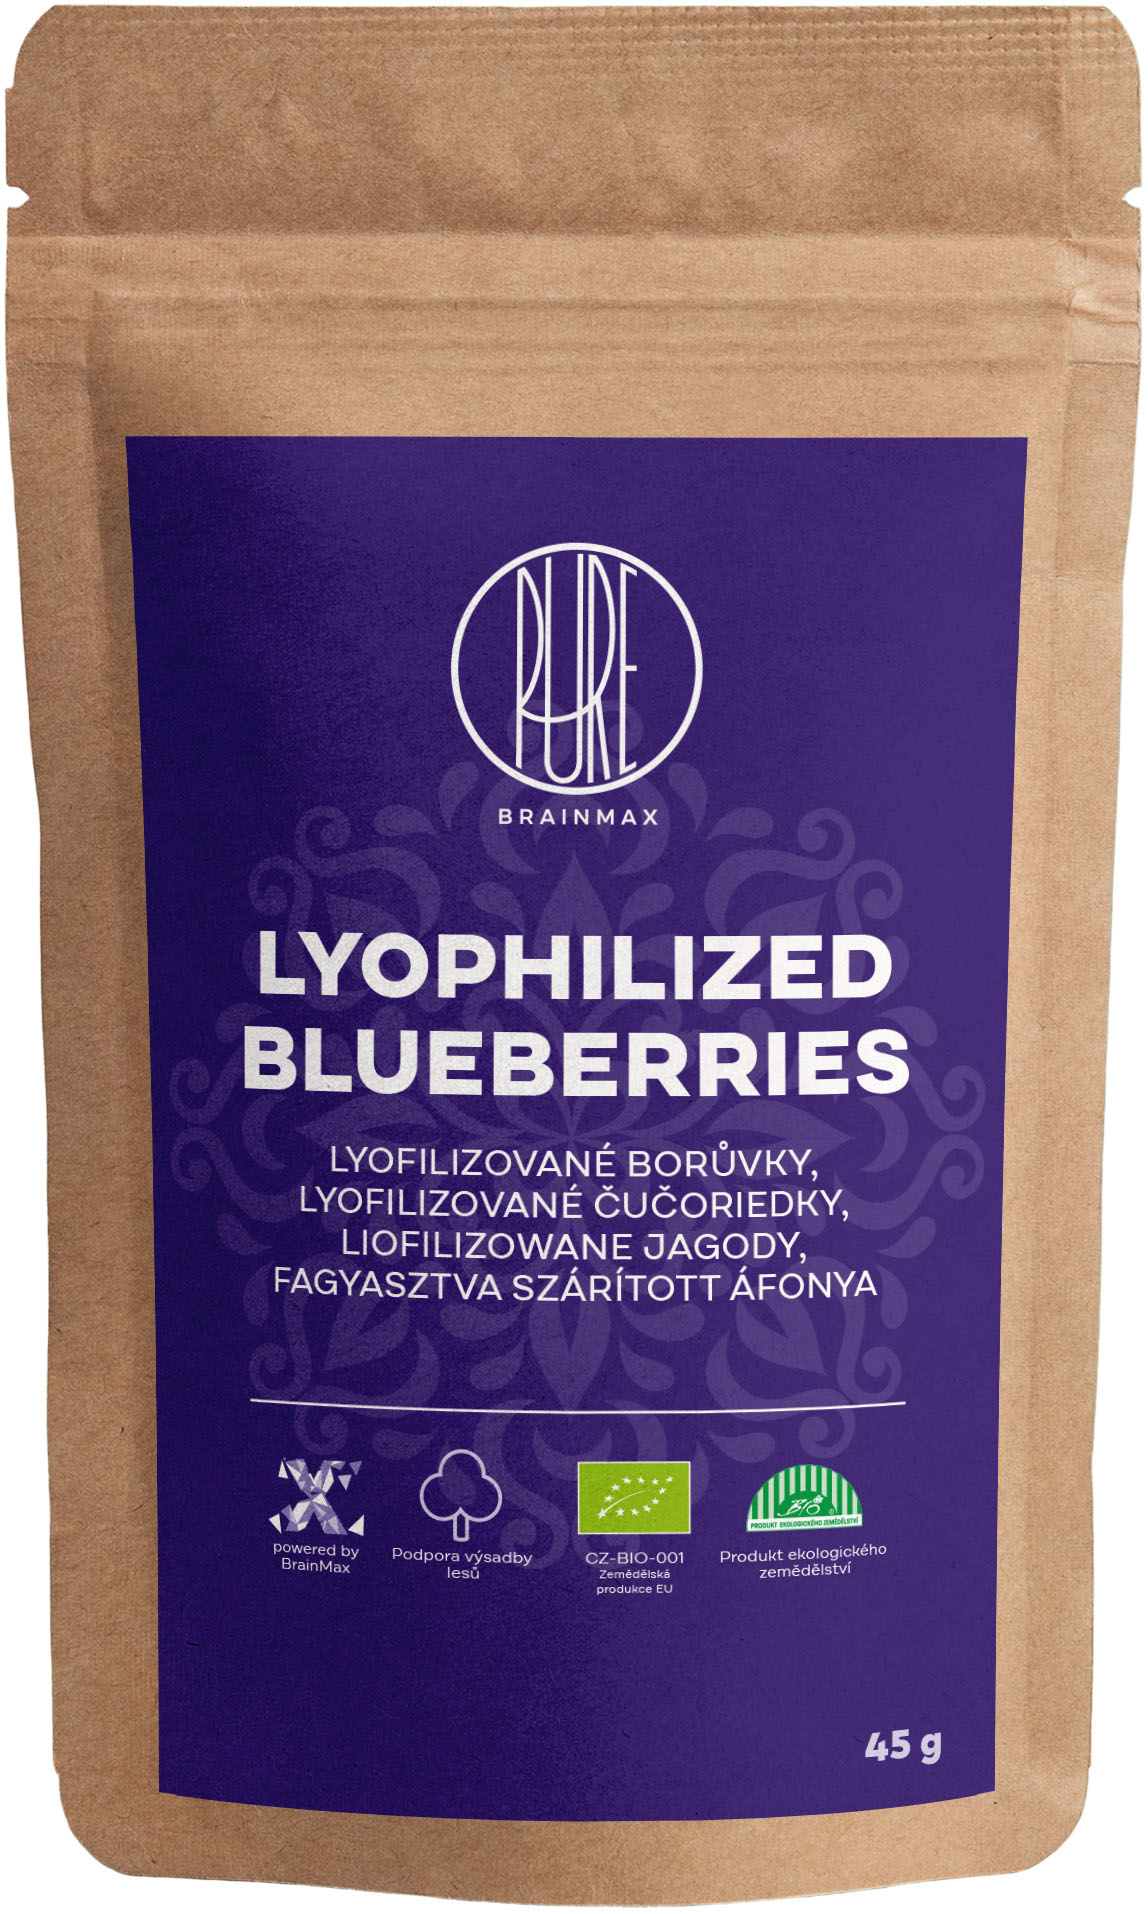 BrainMax Pure Lyophilized Blueberries, Lyofilizované borůvky BIO, 45 g *CZ-BIO-001 certifikát